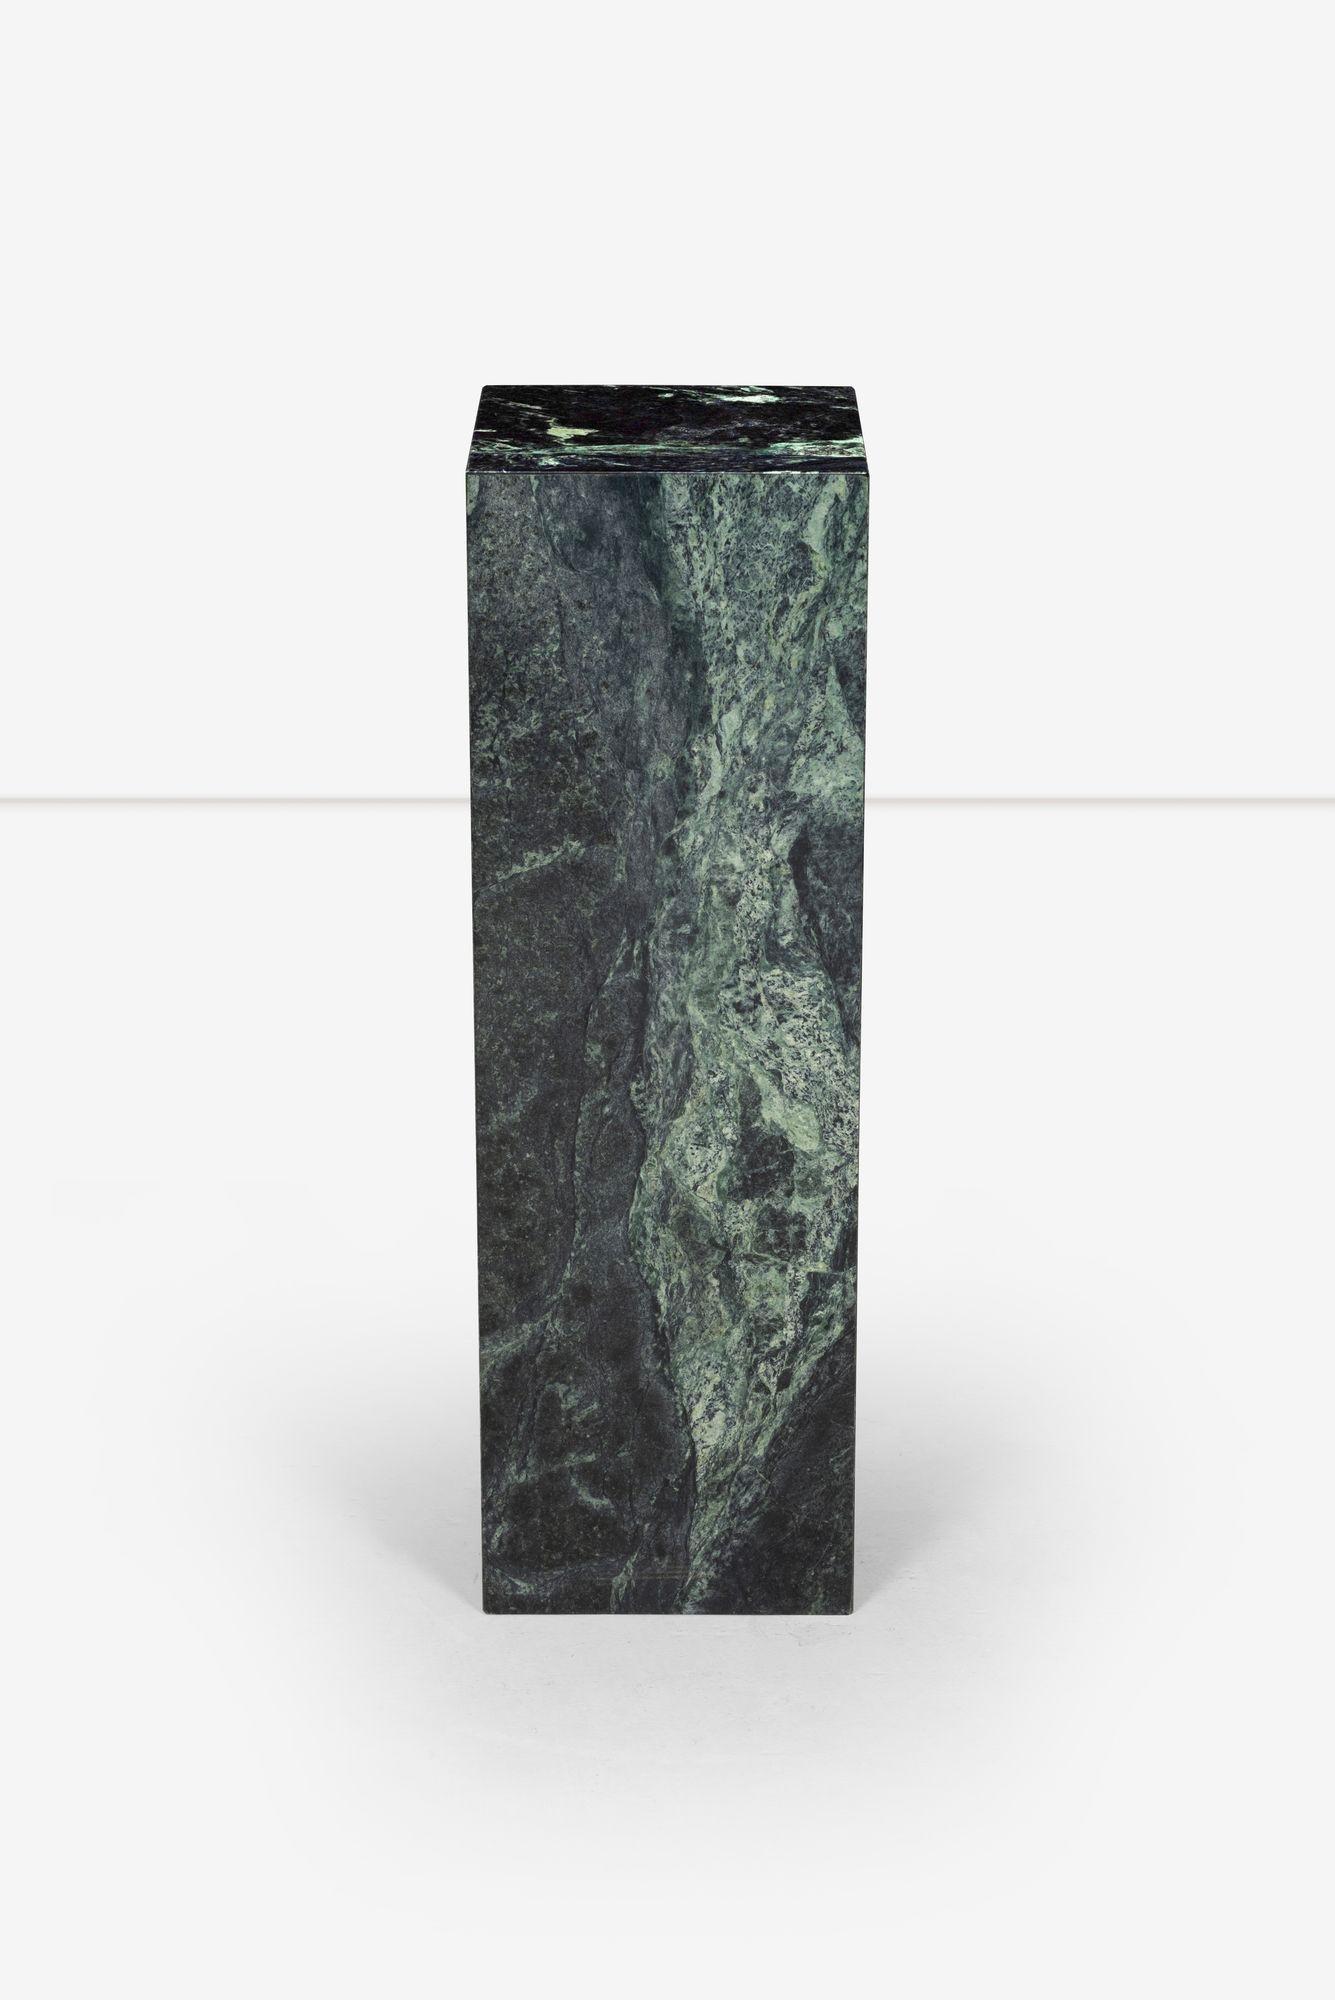 Verdi Alpi Marmorsockel, Mangiarotti Stil
Italienischer Marmor, der in Norditalien abgebaut wird. Er weist verschiedene Grüntöne auf, die durch zarte hellere Äderungen bereichert werden und ihm ein einzigartiges Aussehen verleihen. Ideal für